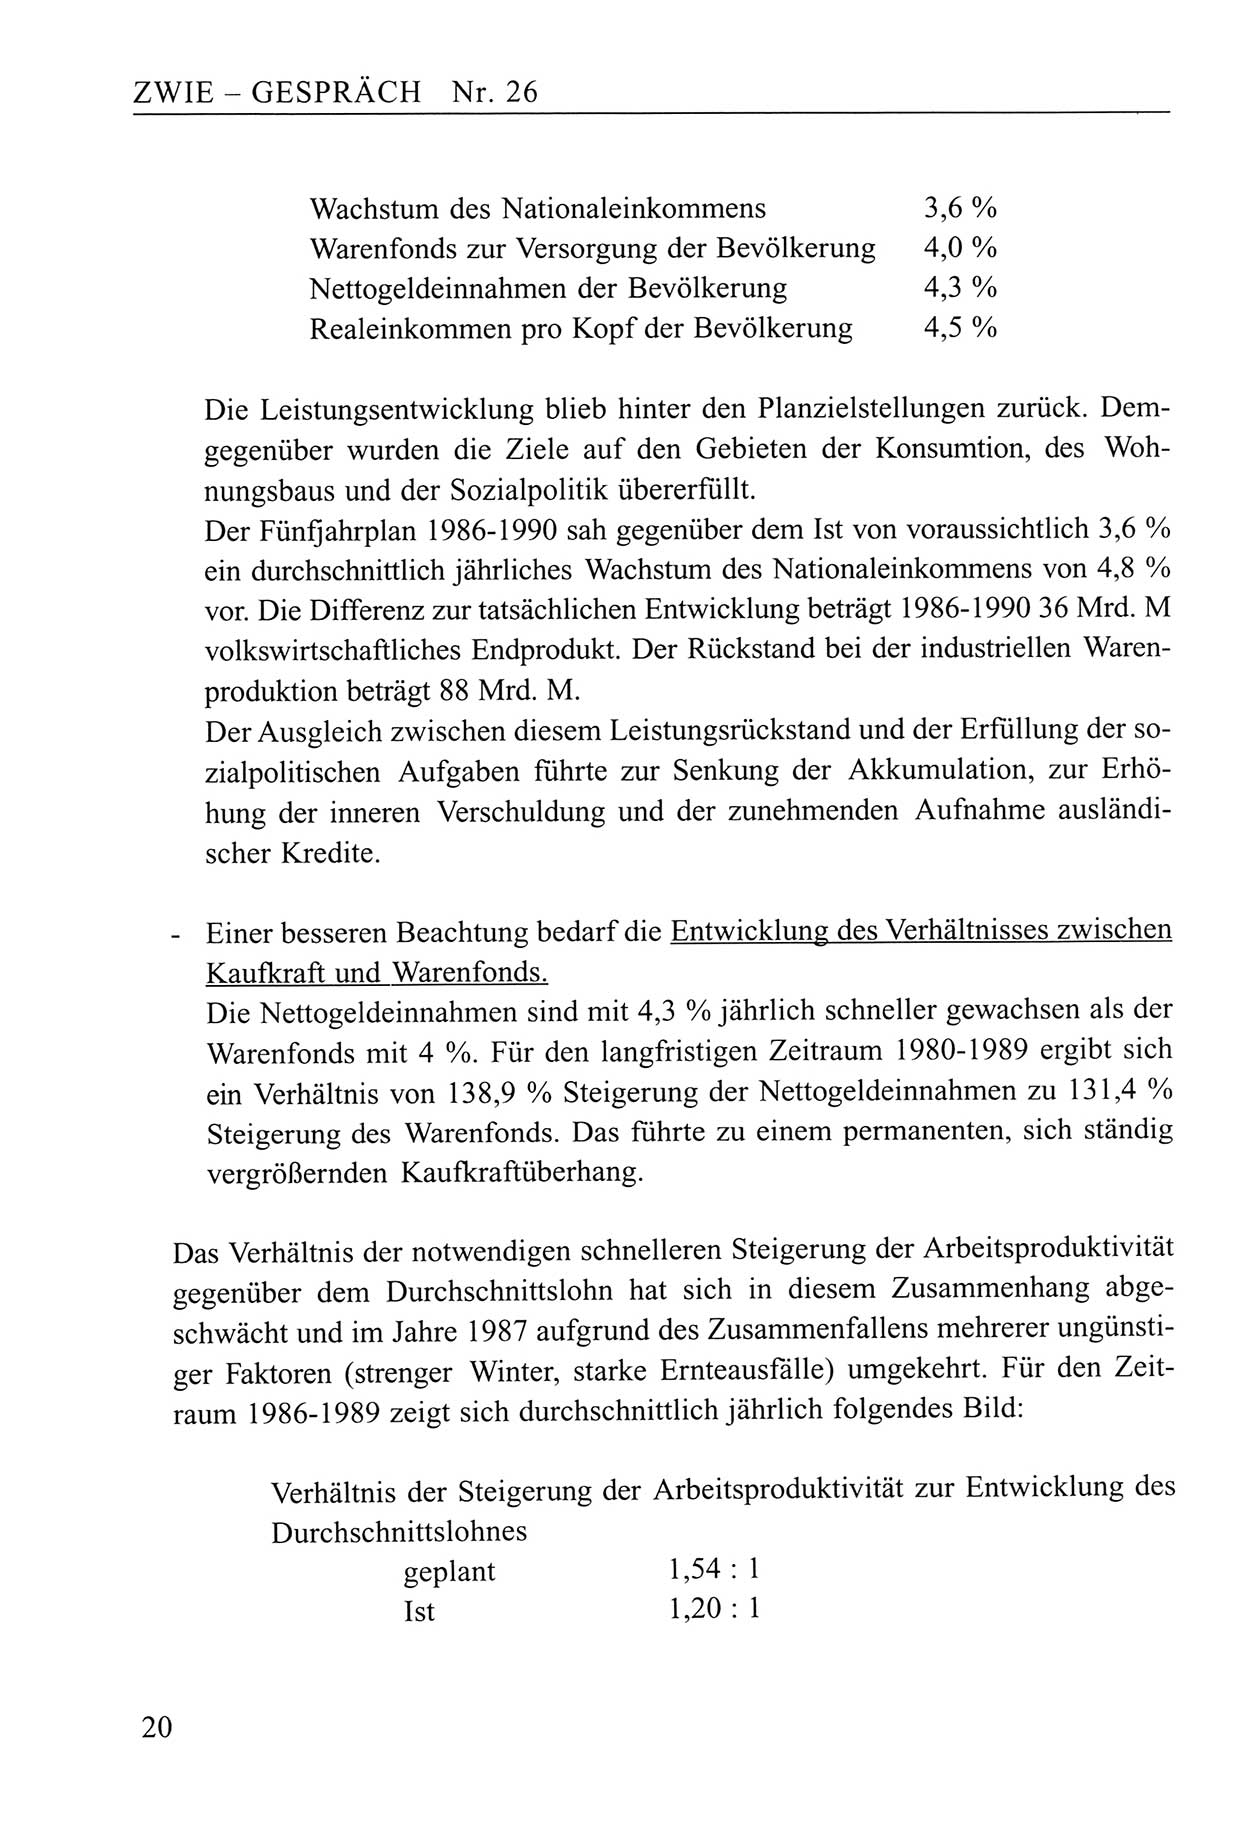 Zwie-Gespräch, Beiträge zum Umgang mit der Staatssicherheits-Vergangenheit [Deutsche Demokratische Republik (DDR)], Ausgabe Nr. 26, Berlin 1995, Seite 20 (Zwie-Gespr. Ausg. 26 1995, S. 20)